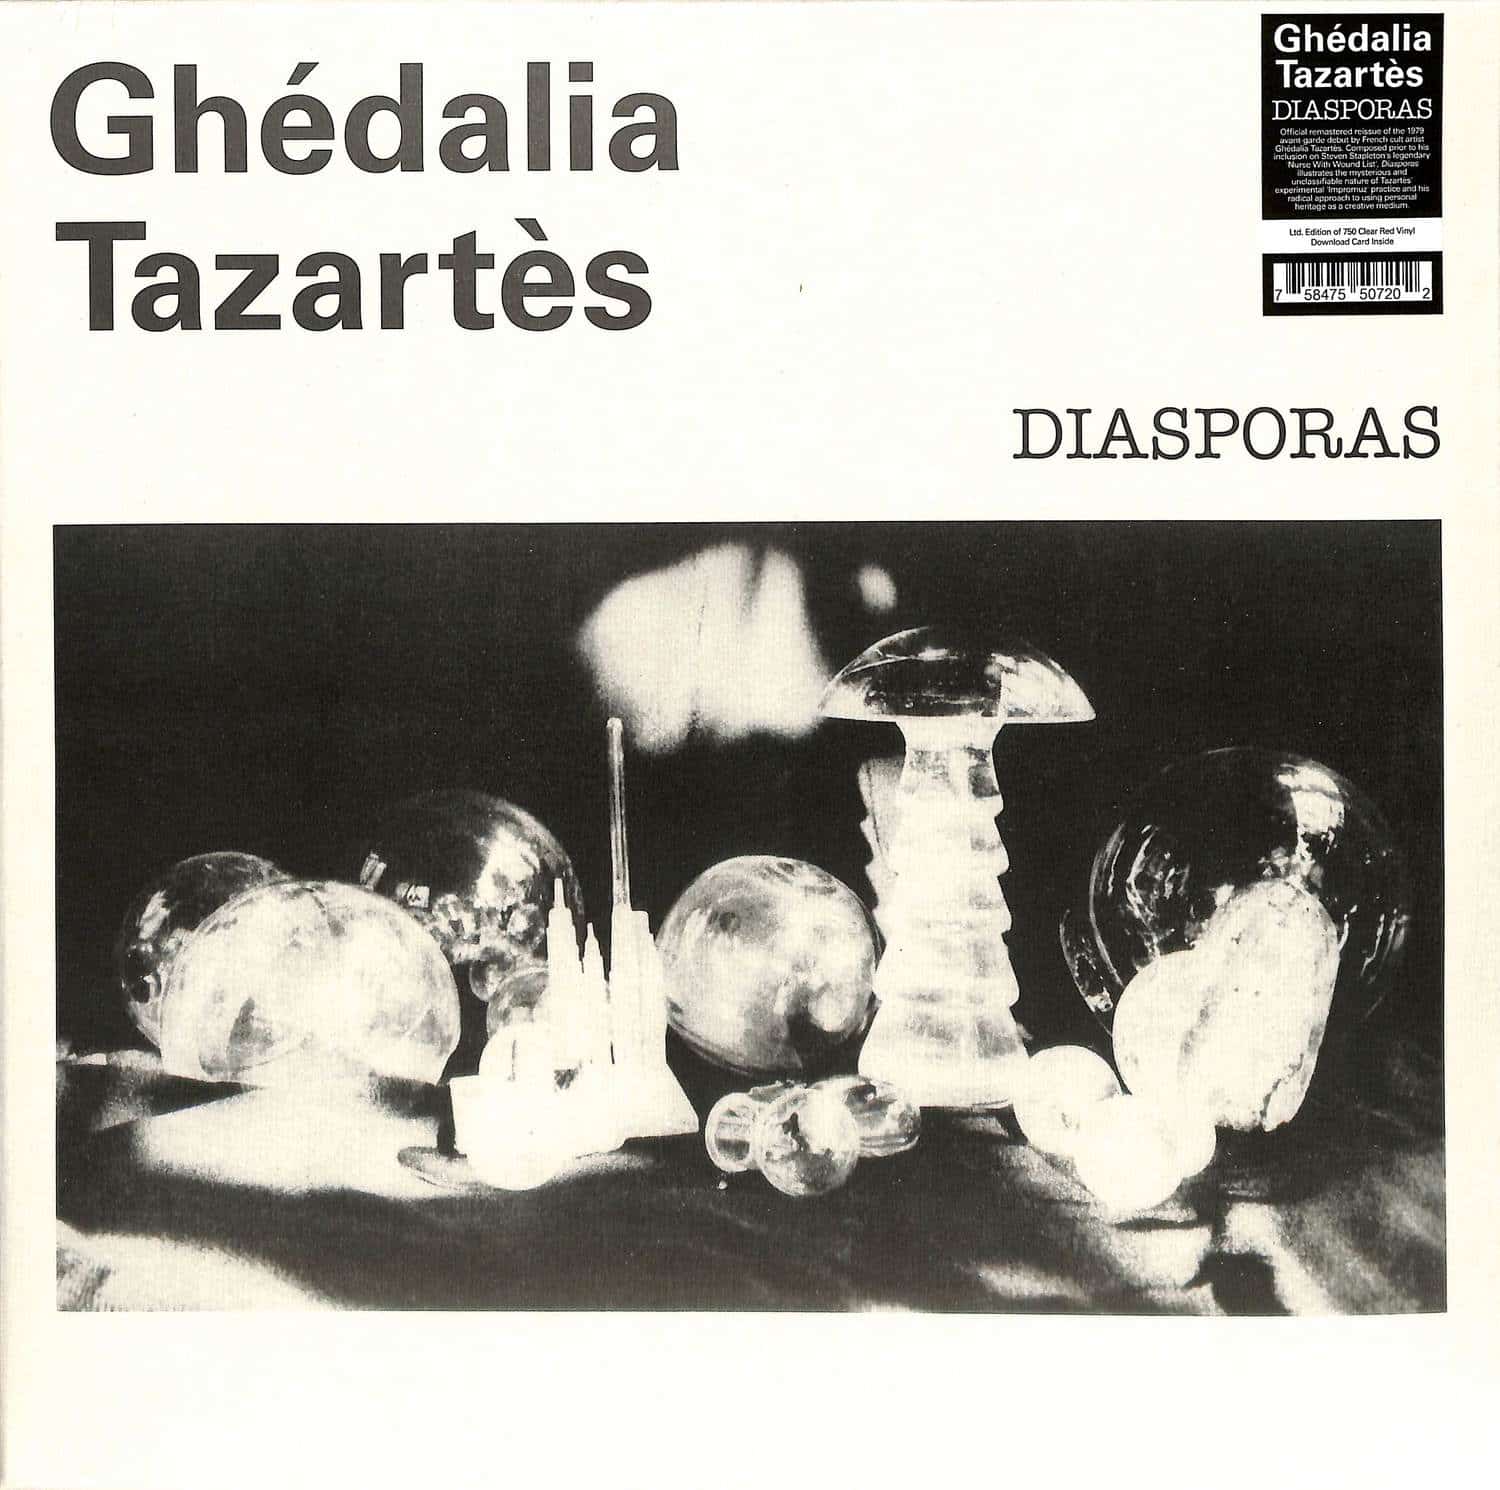 Ghedalia Tazartes - DIASPORAS 